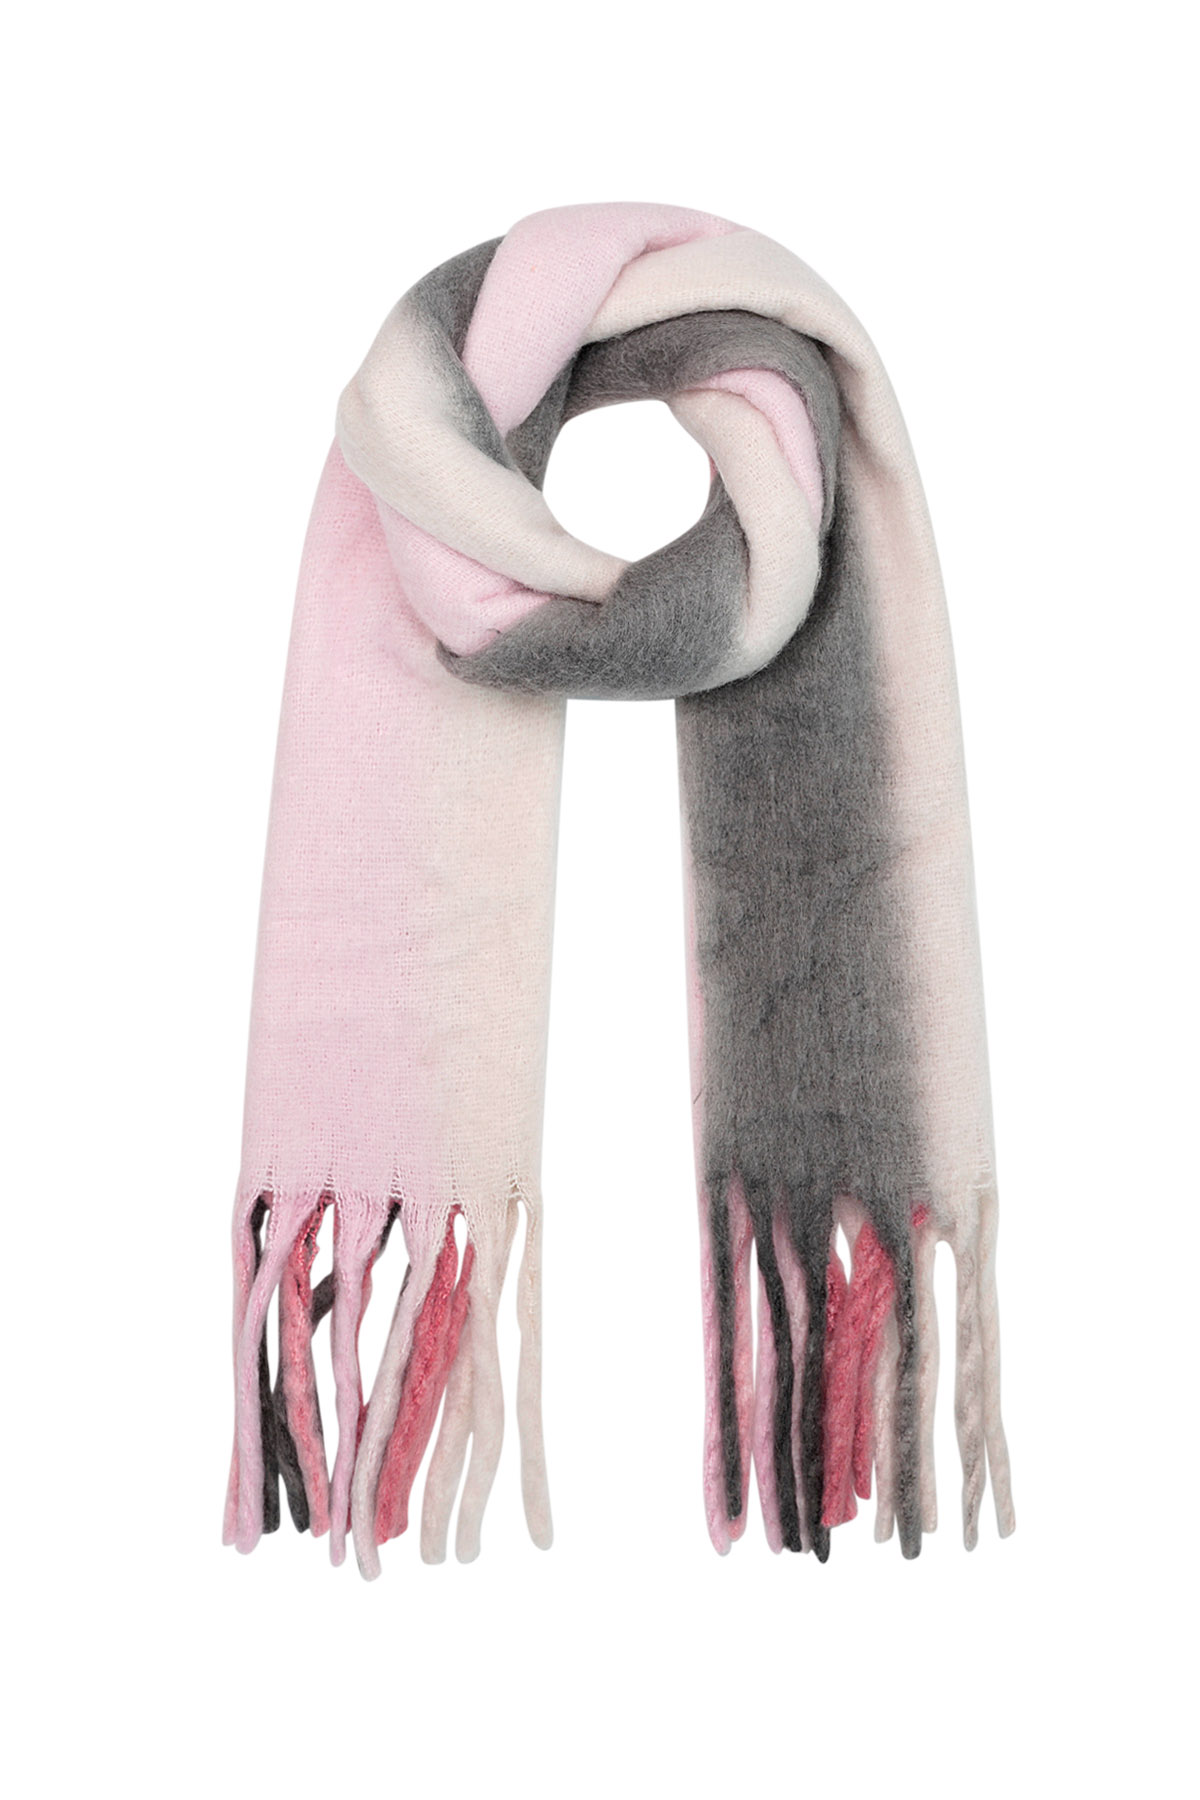 Wintersjaal ombré kleuren  roze/grijs Polyester h5 